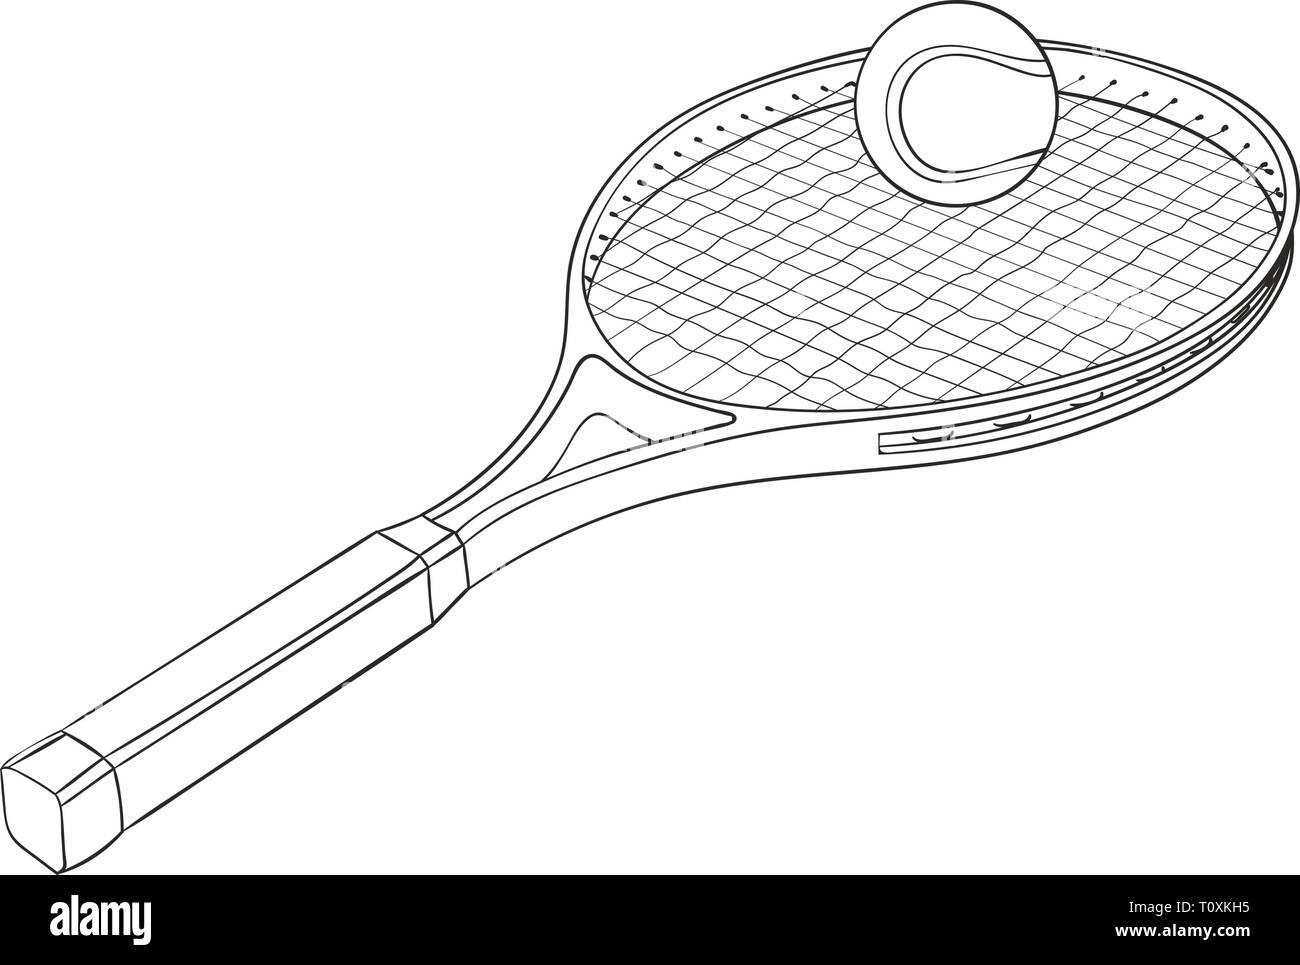 Raquette de tennis avec une balle. Croquis dessinés à la main Image  Vectorielle Stock - Alamy